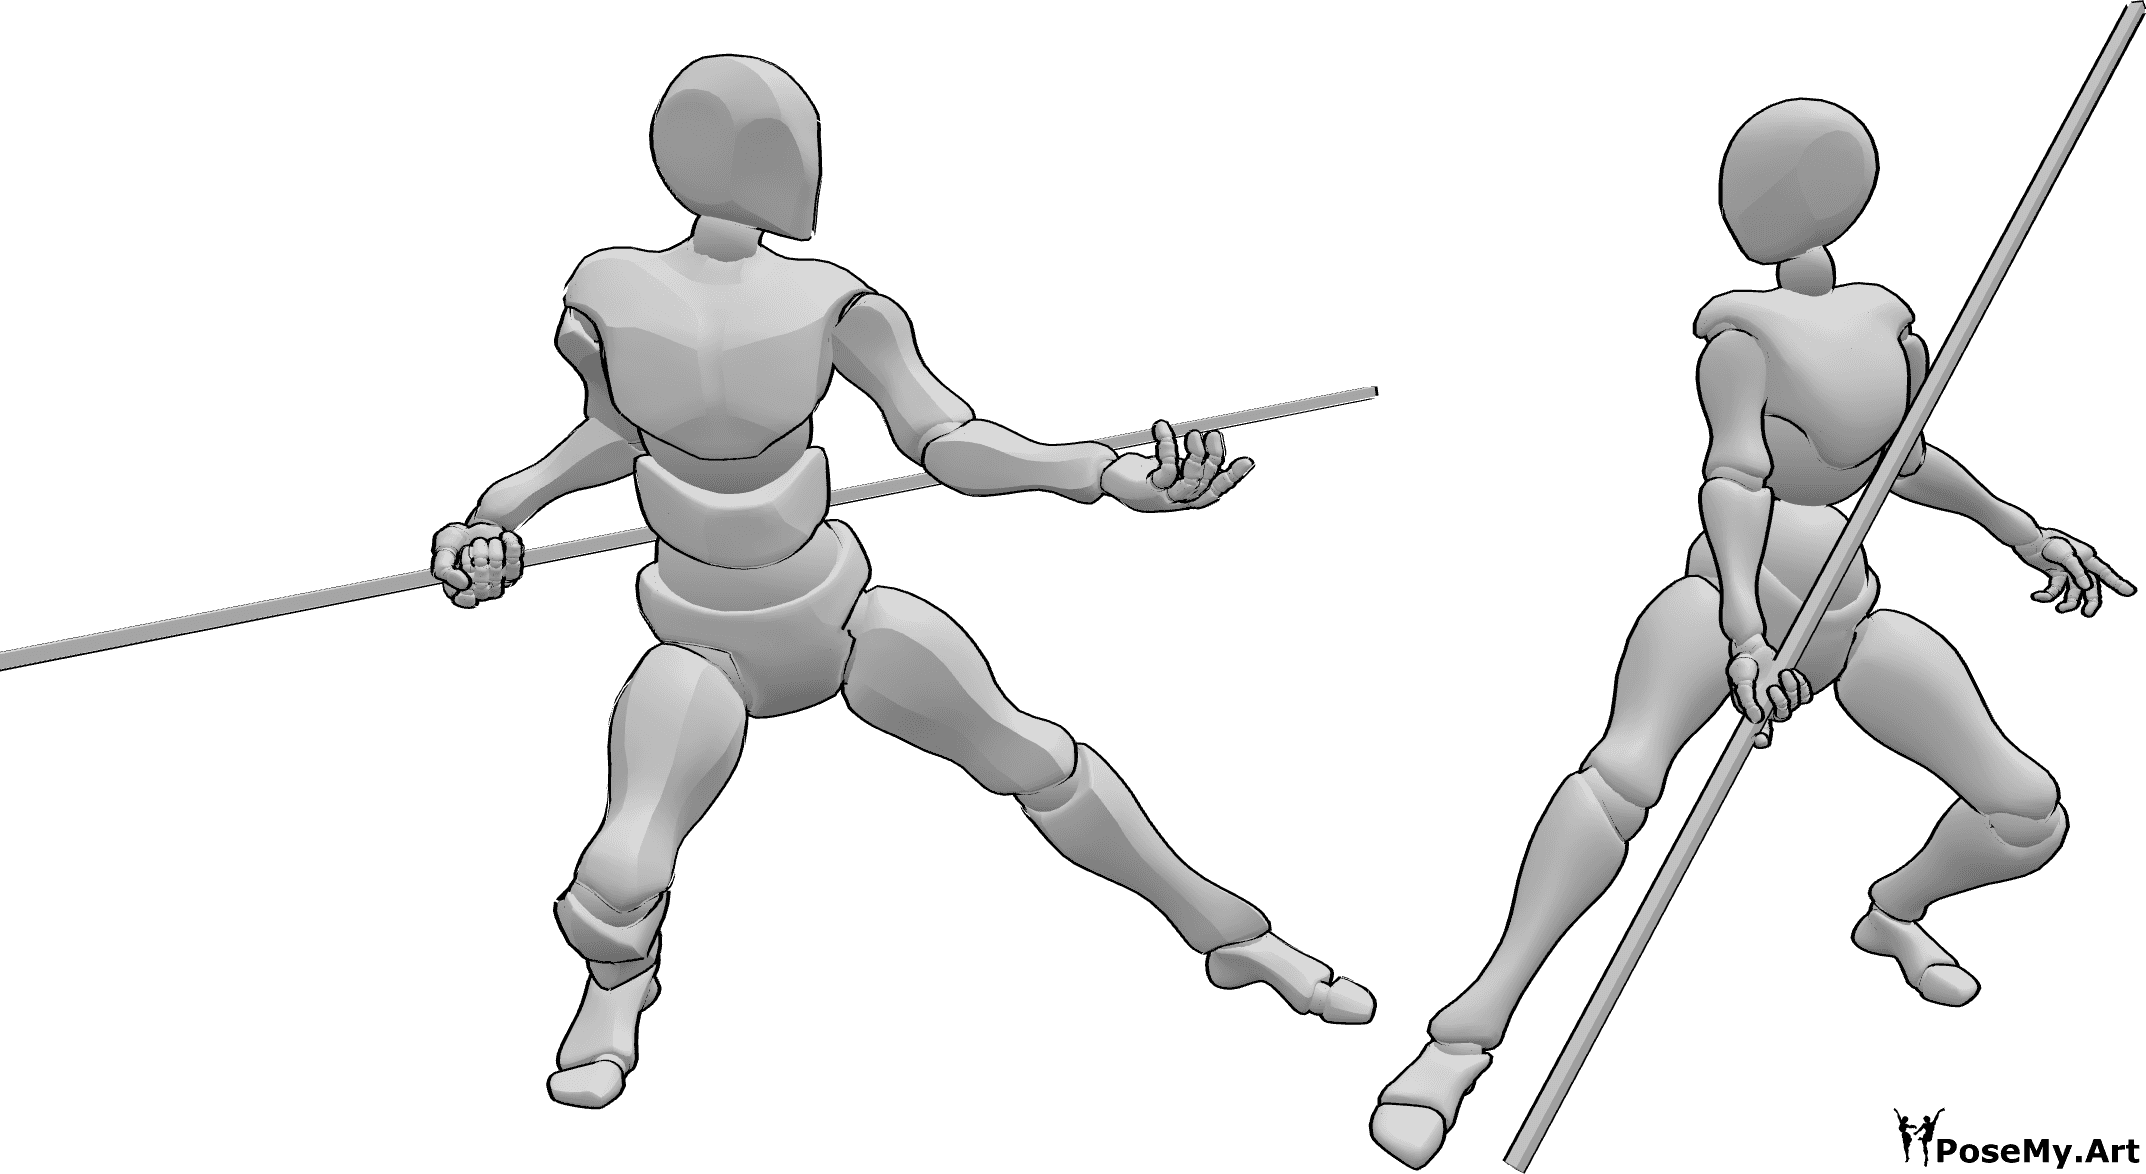 Riferimento alle pose- Posa di lotta tra donne e uomini - La femmina e il maschio iniziano a litigare